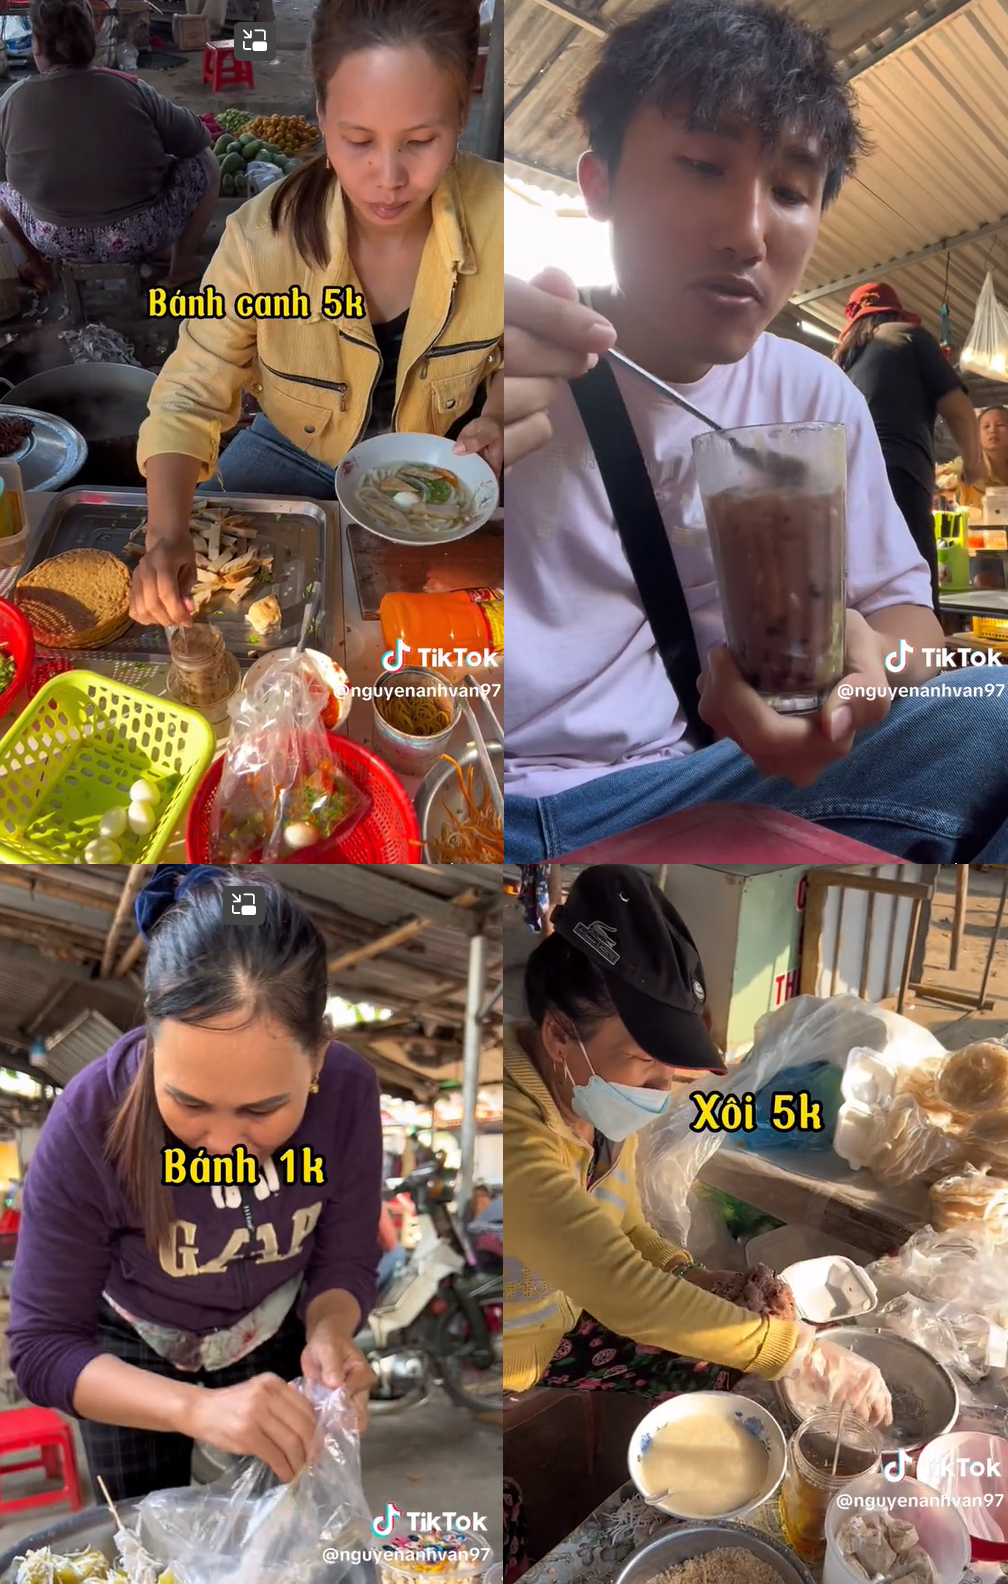 Sự thật về khu chợ ở Phú Yên được ca ngợi “rẻ nhất Việt Nam”, khiến người giới thiệu phải tung bằng chứng xác thực - Ảnh 4.